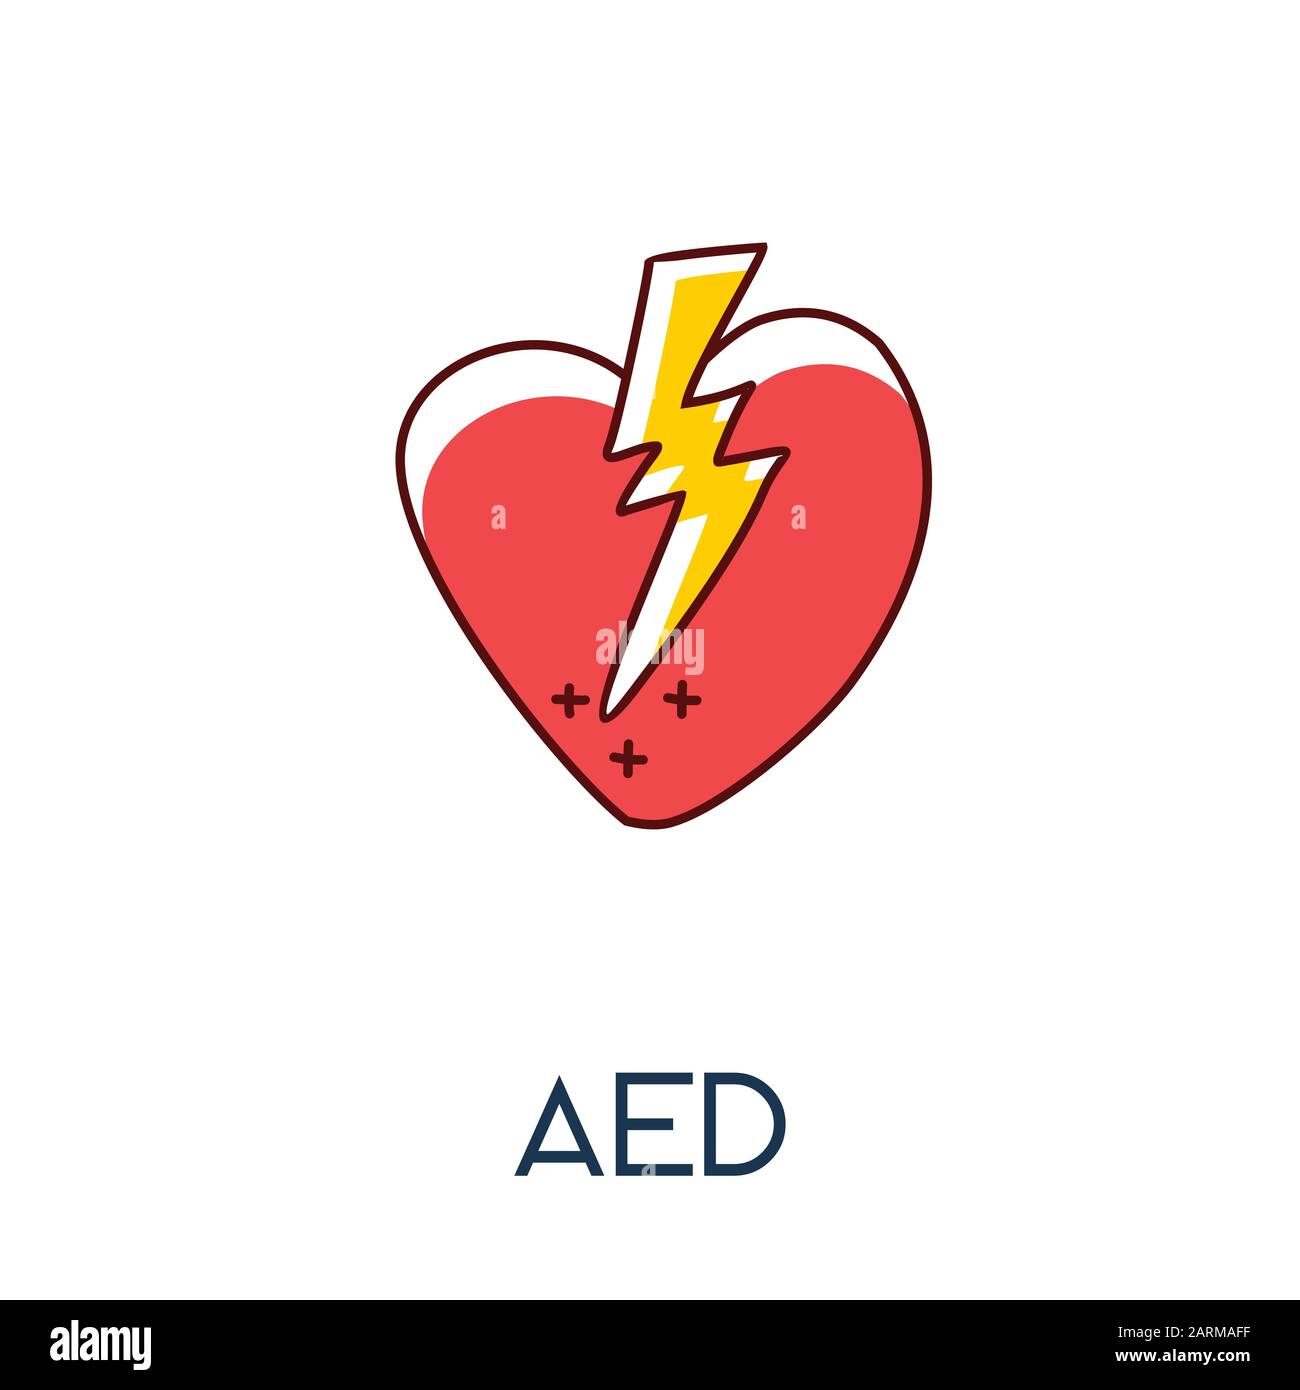 Defibrillatore automatico esterno (AED) cuore con scossa elettrica minimalista out line disegno a mano icona medic piatto Illustrazione Vettoriale